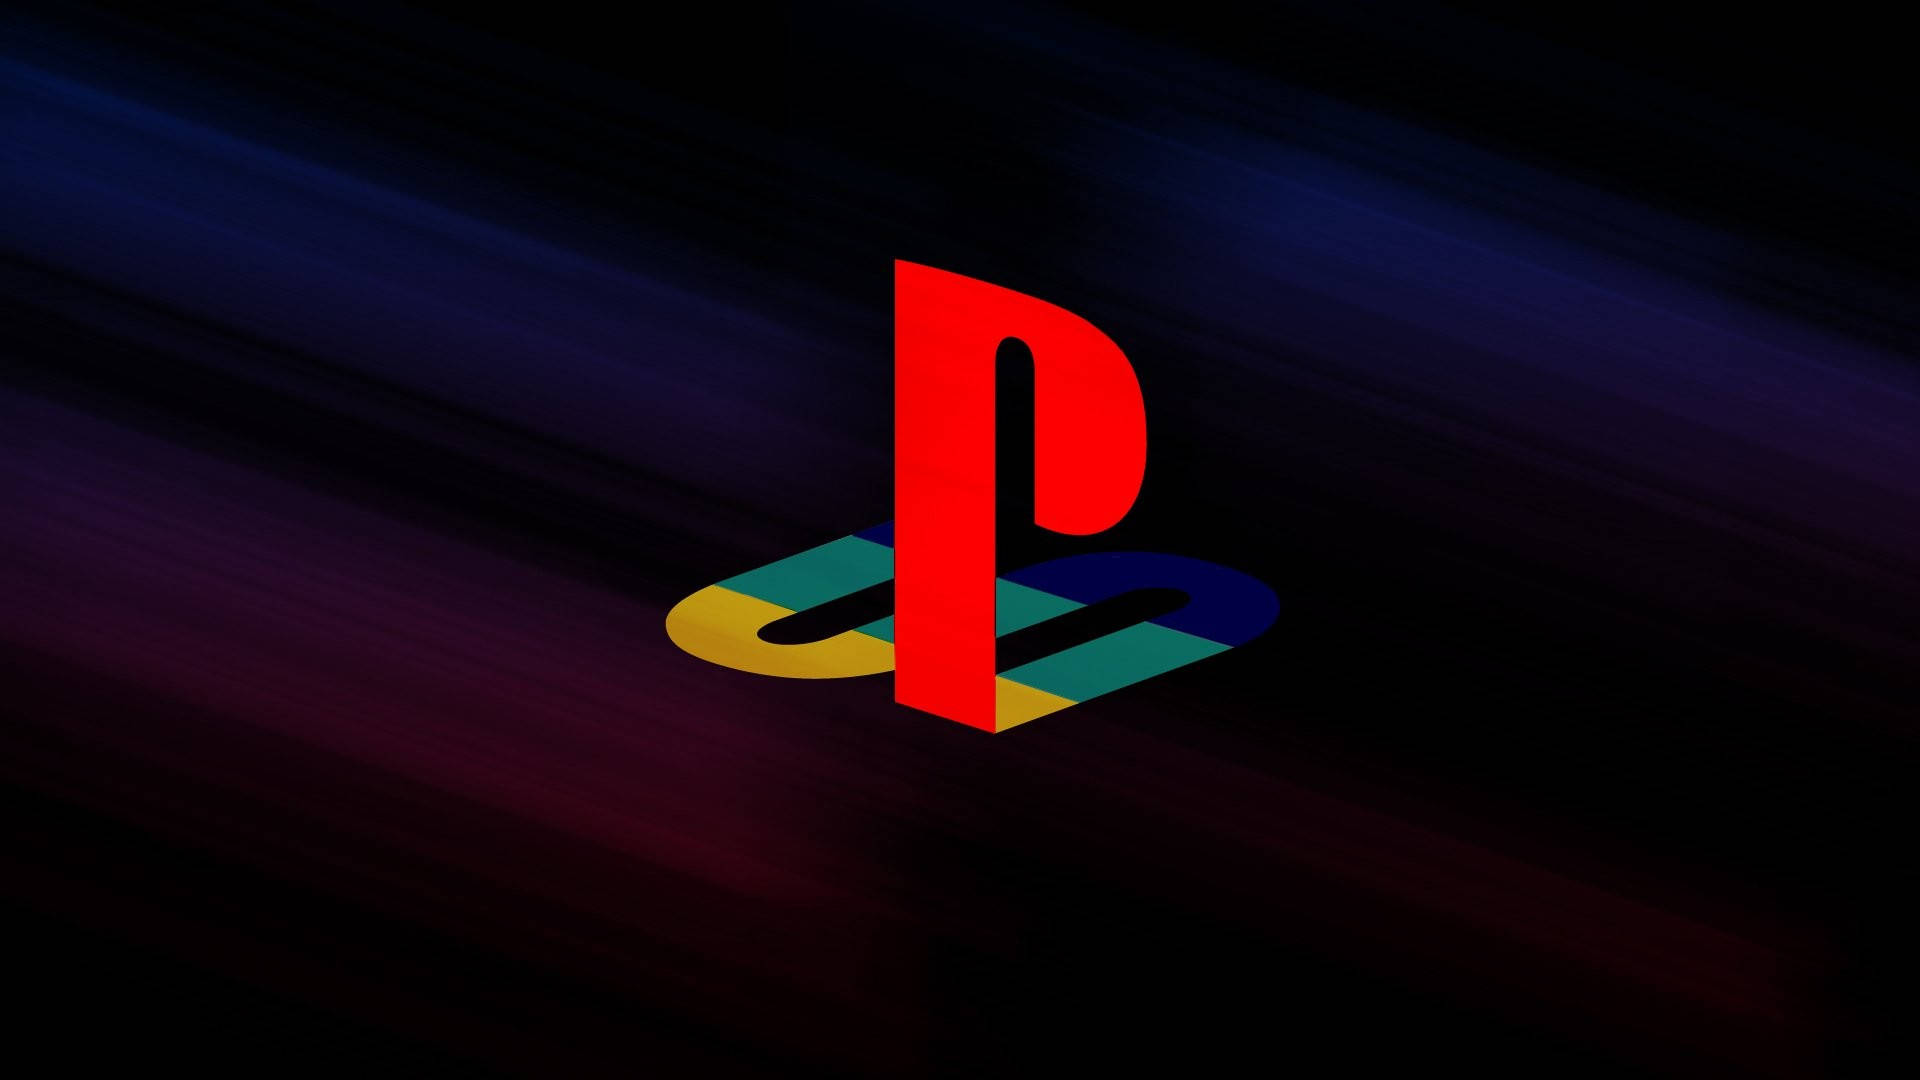 Logotipode Playstation Con Fondo Oscuro Para Ps3. Fondo de pantalla